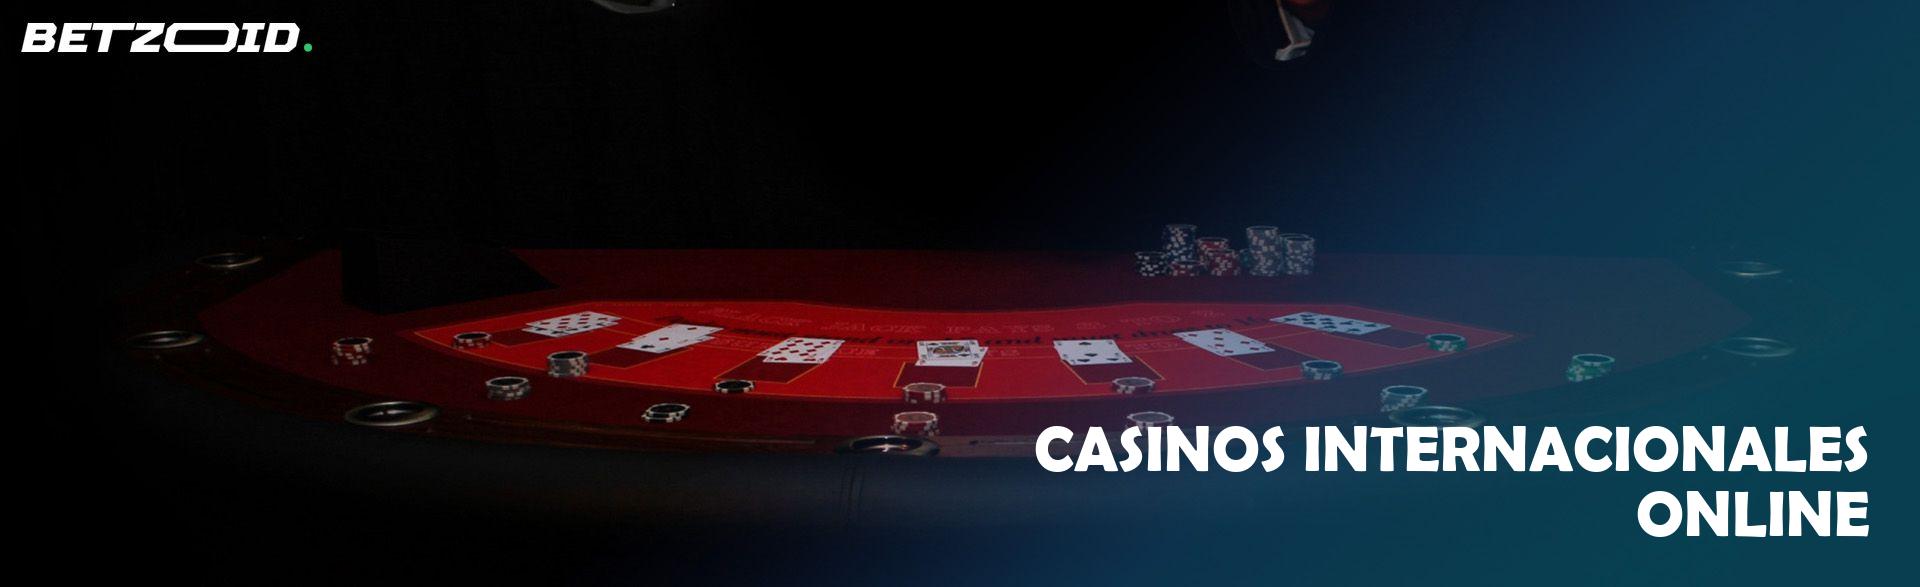 Casinos Internacionales Online.